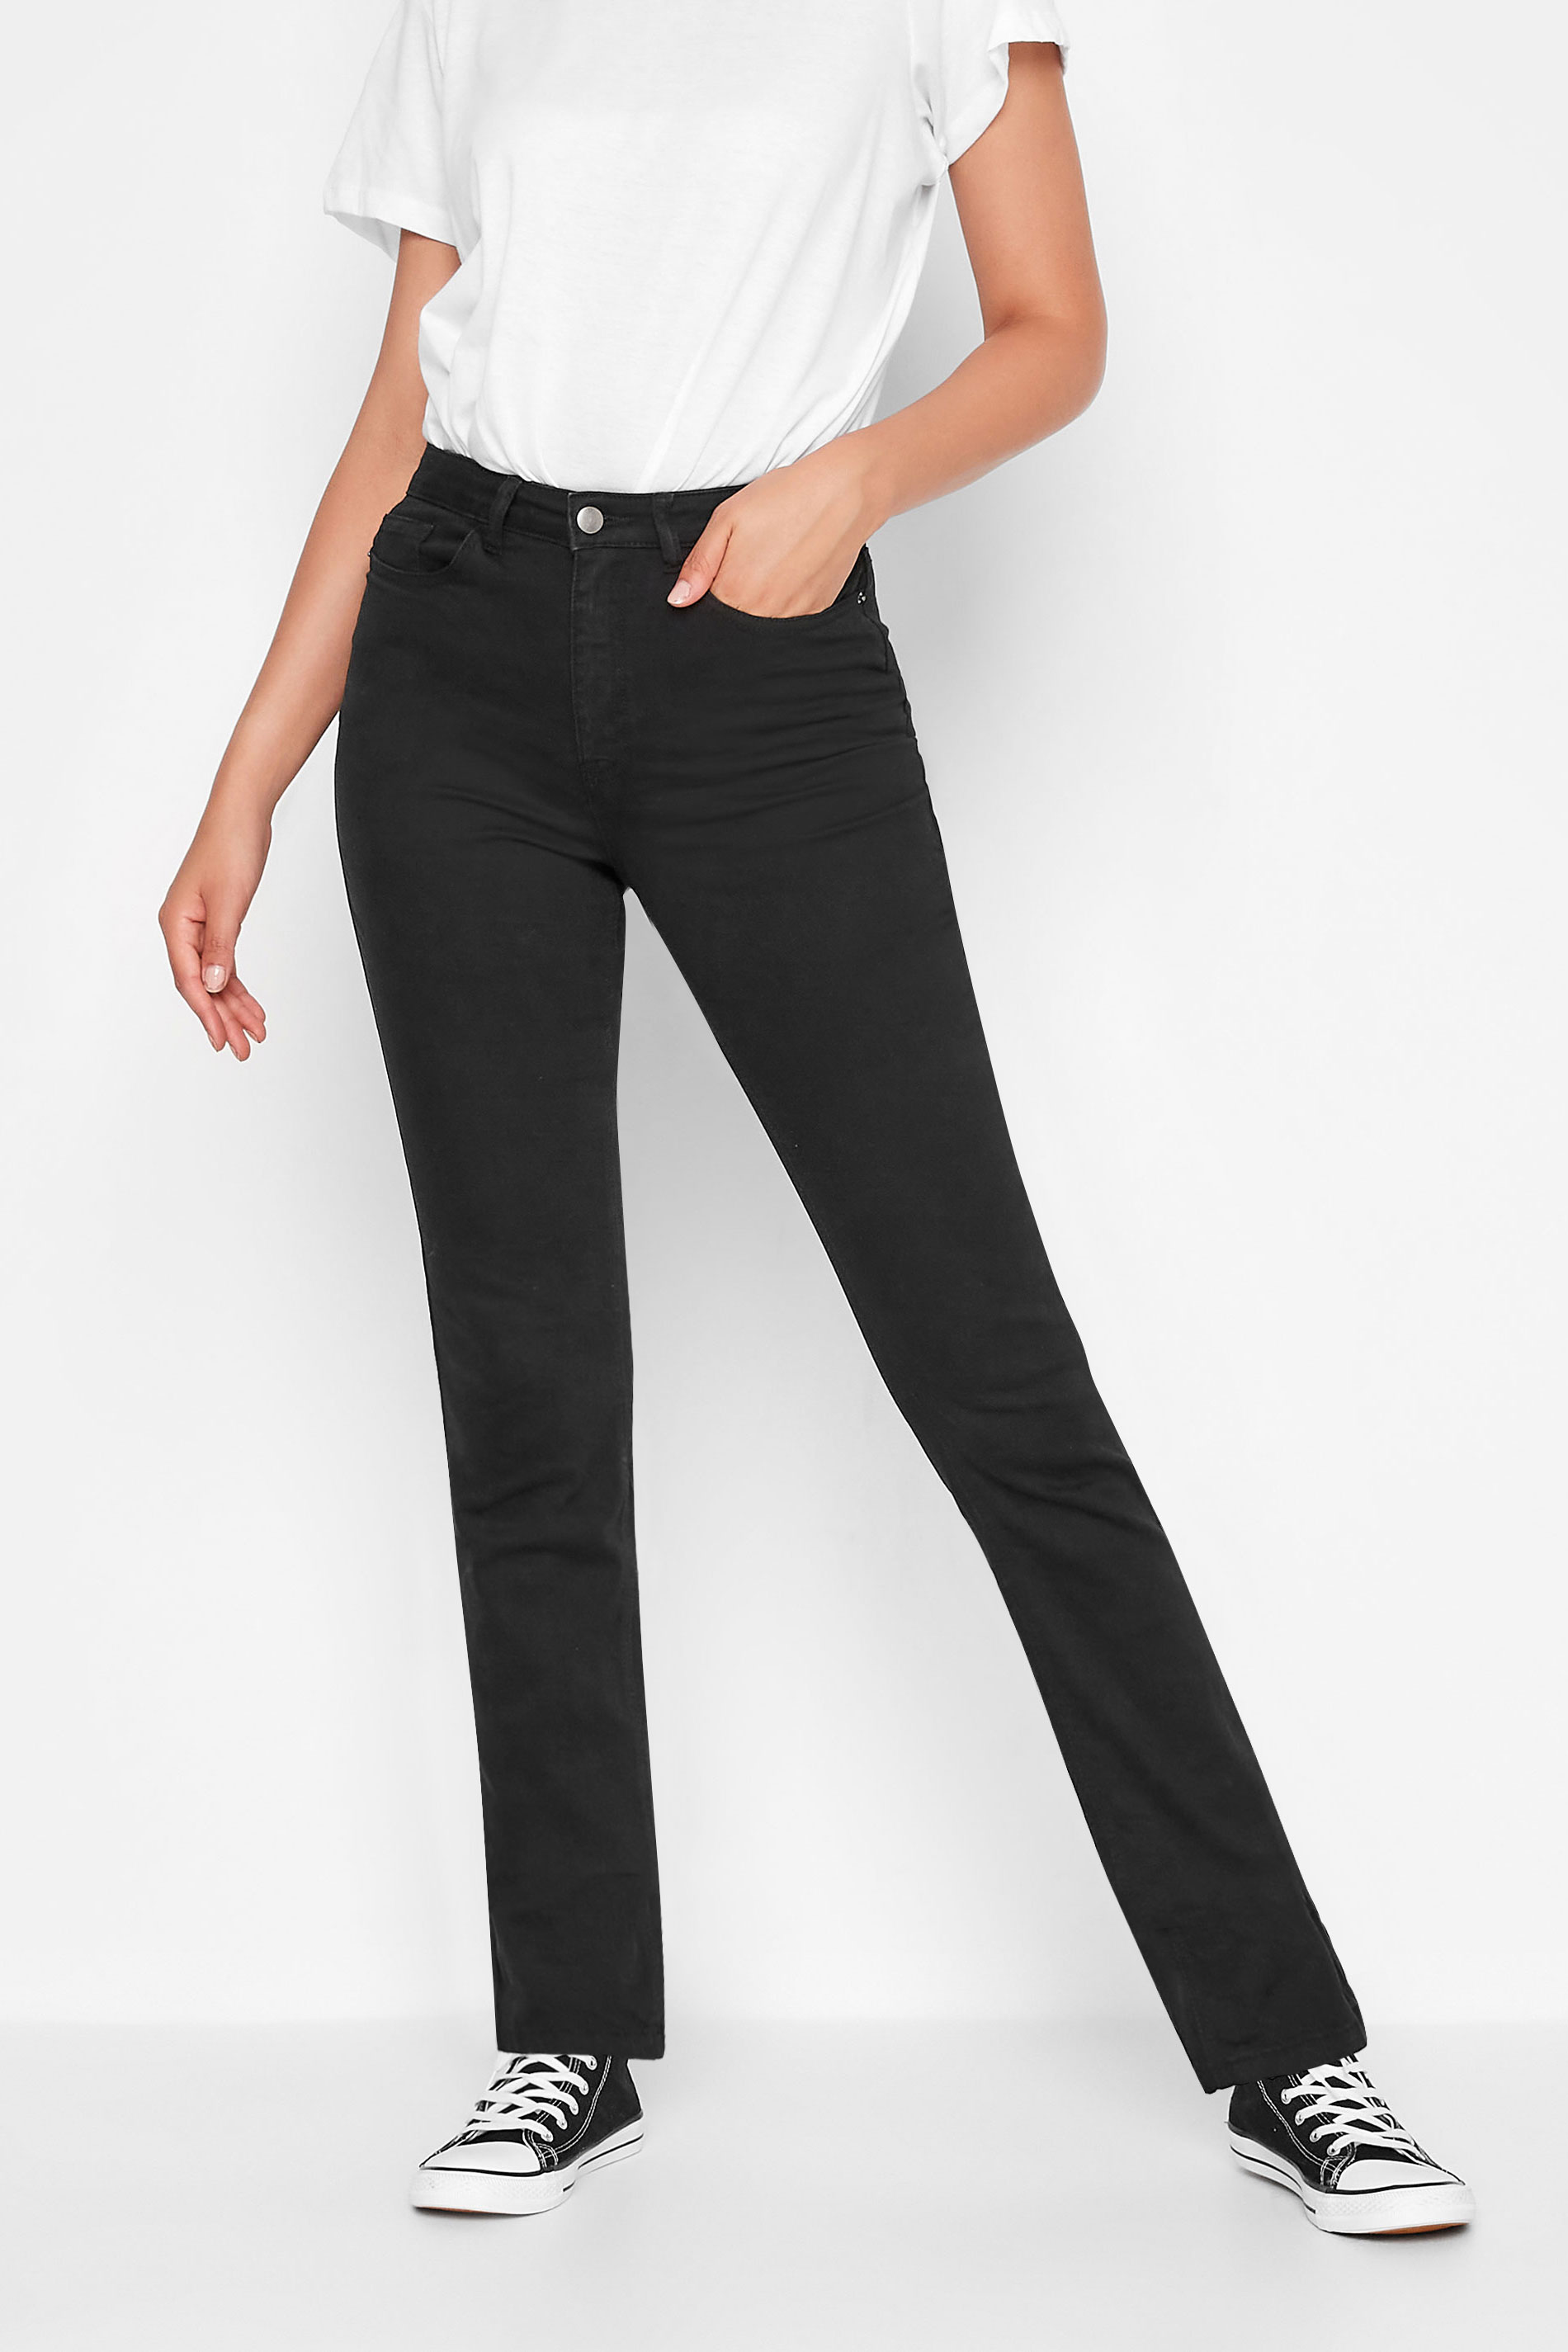 LTS Tall Women's Black MIA Slim Leg Jeans | Long Tall Sally 1